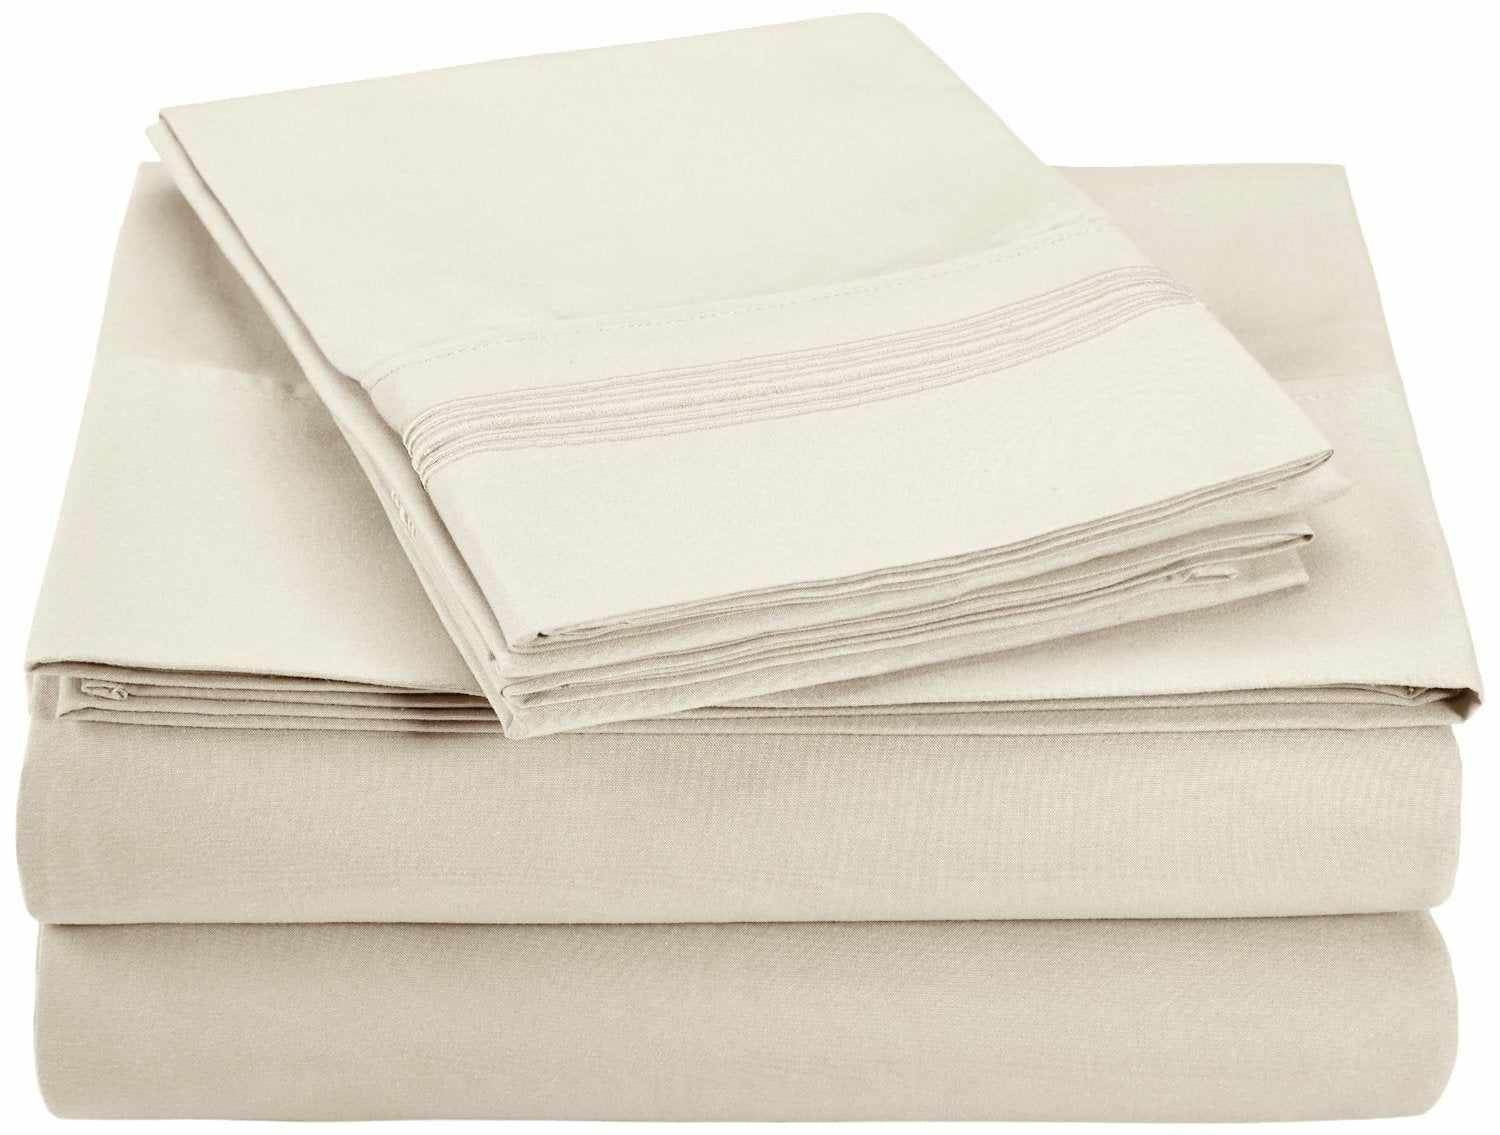 Superior 5 Embroidered Lines Wrinkle Resistant Microfiber Deep Pocket Sheet Set - Ivory